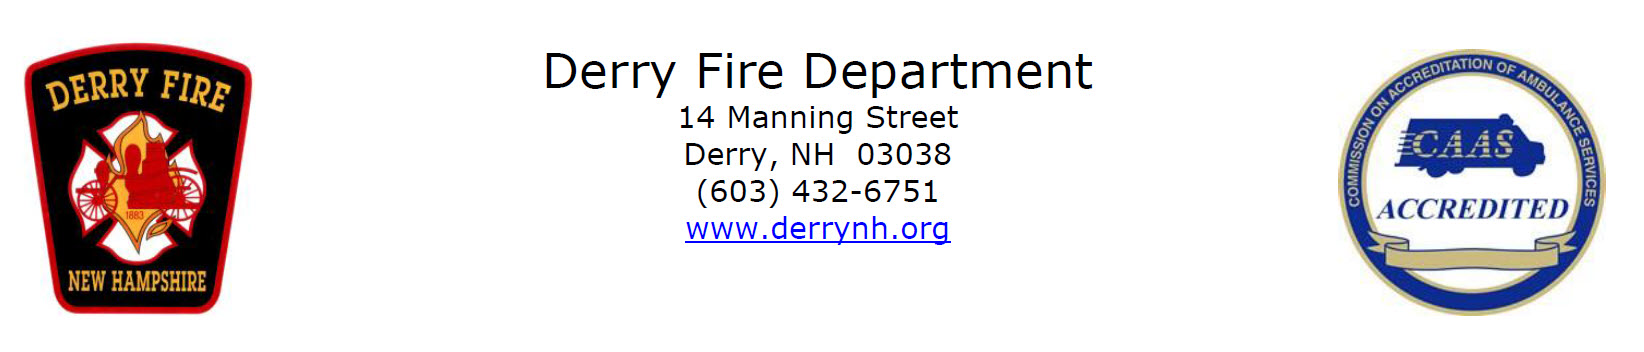 Derry Fire Department, NH Firefighter Jobs